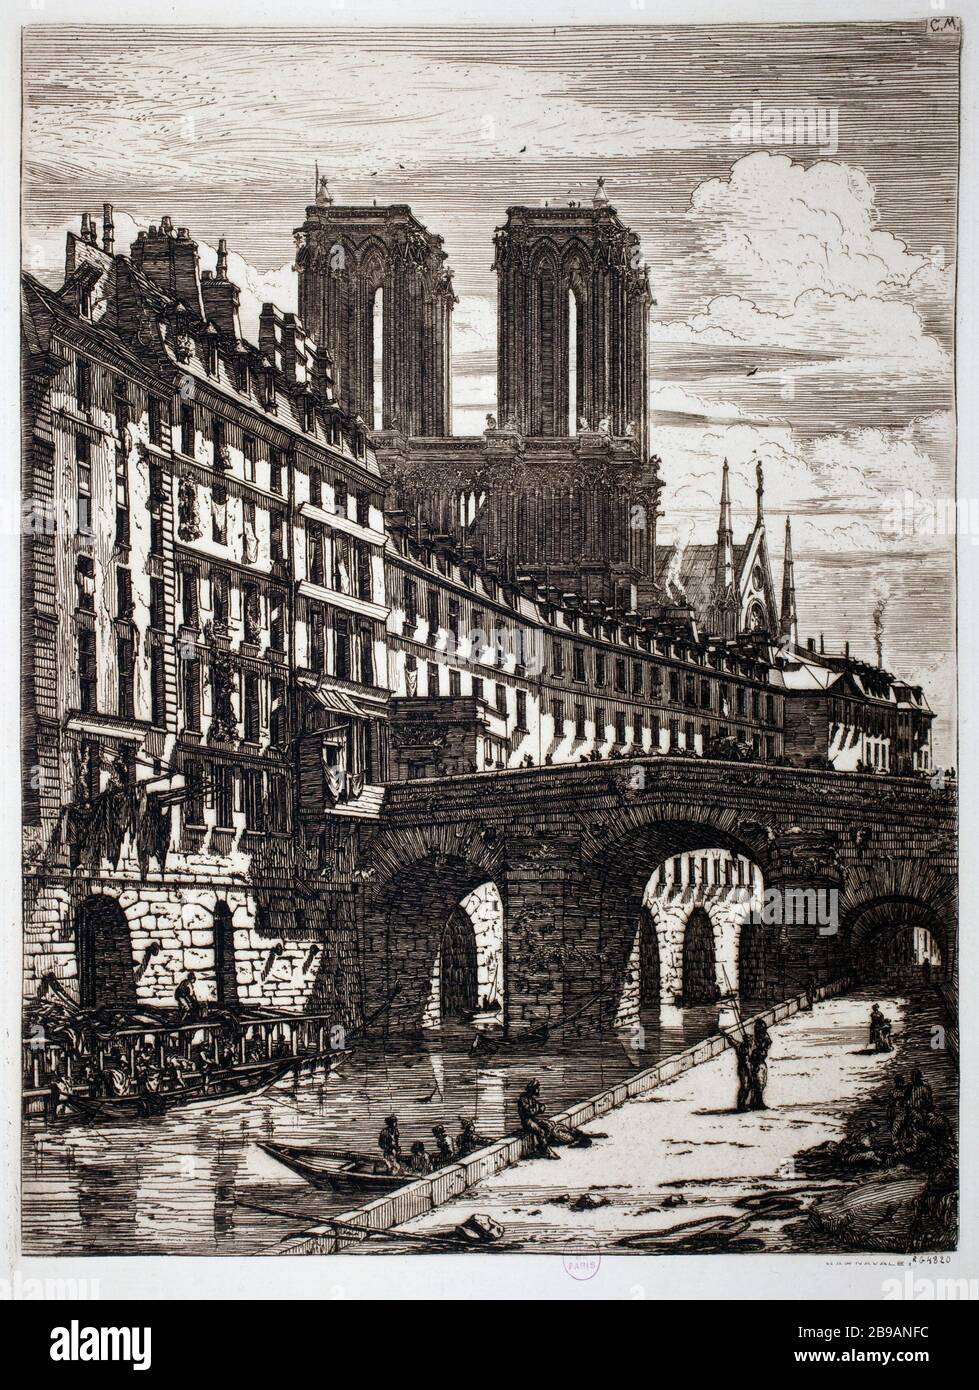 LE PETIT-PONT Charles Meryon (1821-1868). "Le Petit-Pont". Eau-forte, 1850. Paris, musée Carnavalet. Stockfoto